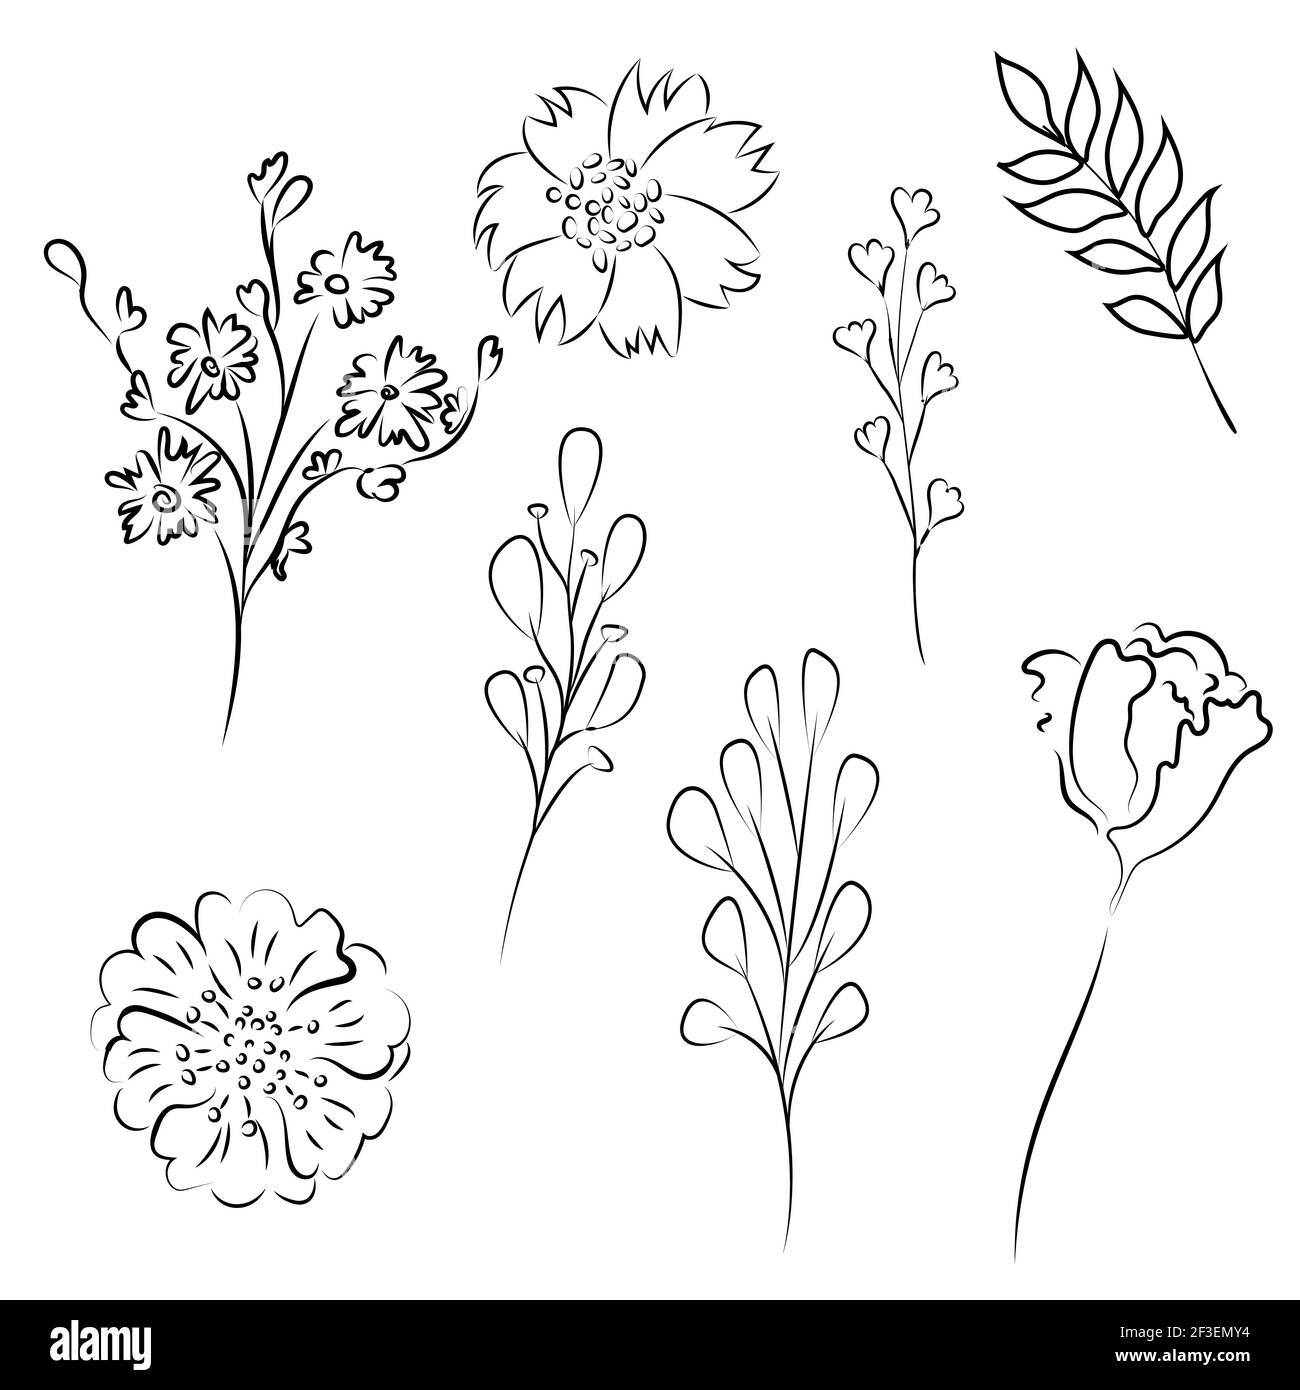 Set mit Blumenmotiv. Blumen- und Blattzeichnungen. Schwarz und Weiß mit  Strichbilder auf weißem Hintergrund. Handgezeichnete Illustrationen. Vektor  Stock-Vektorgrafik - Alamy